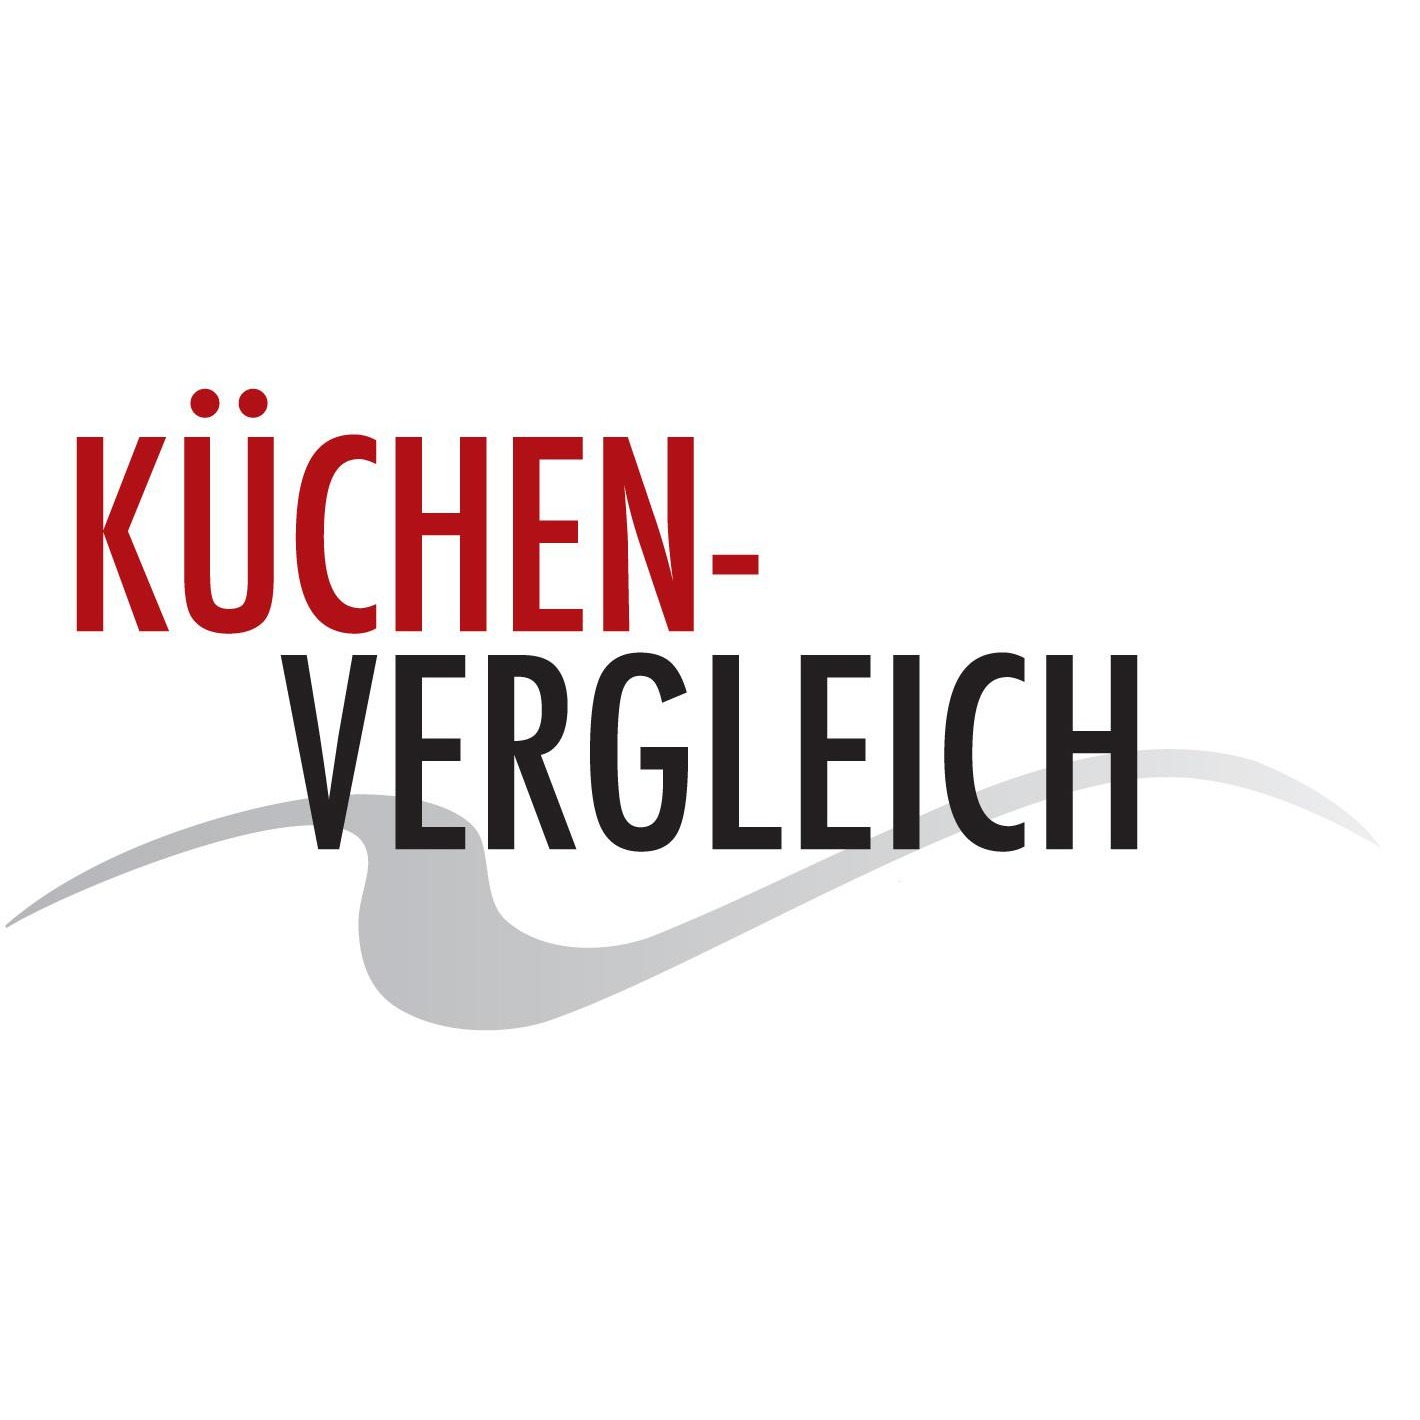 Küchenvergleich Würselen Logo